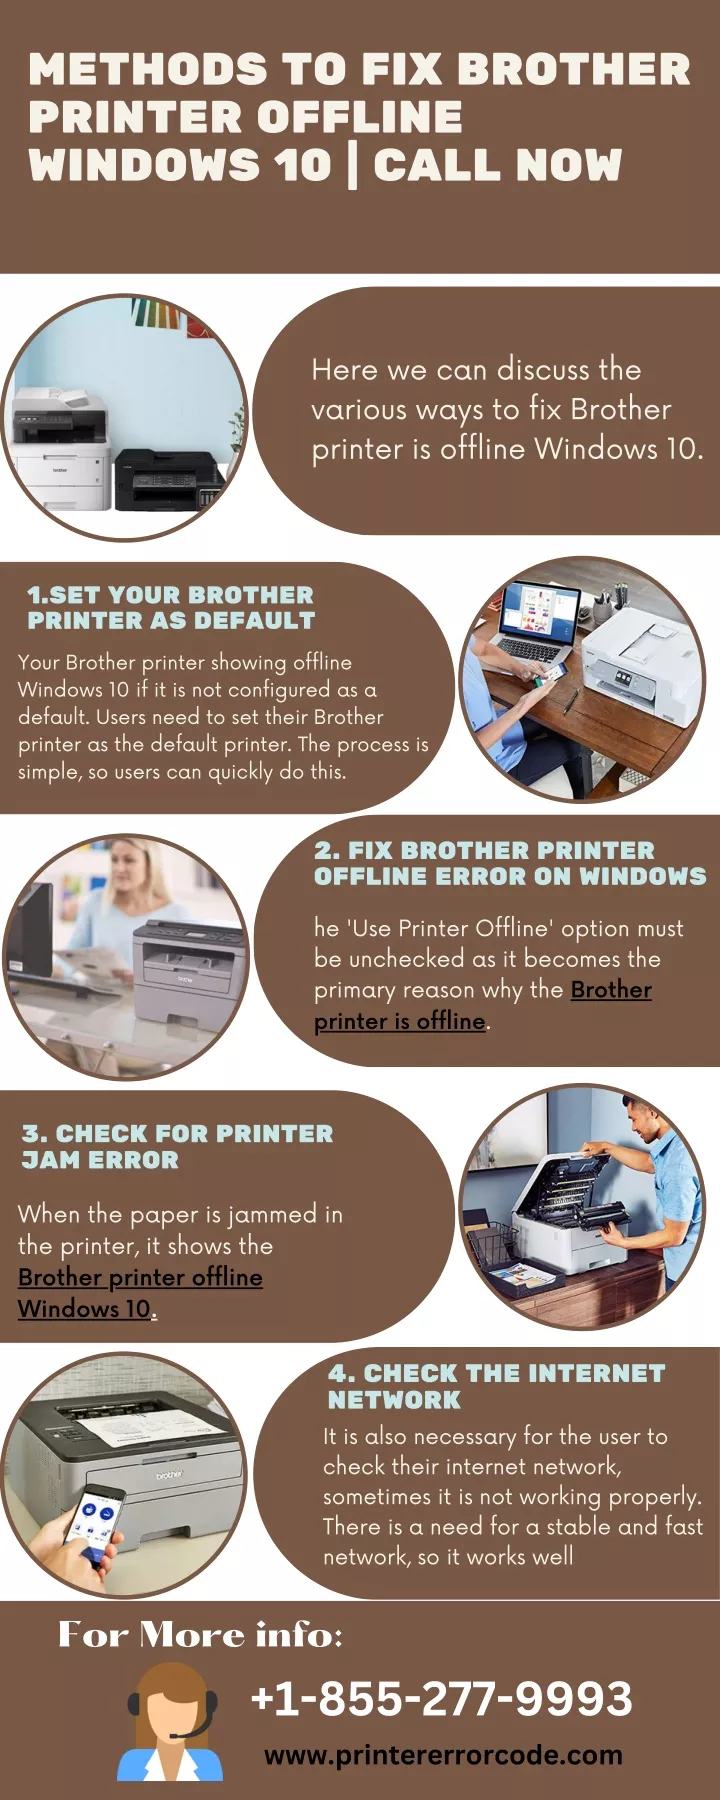 methods to fix brother printer offline windows